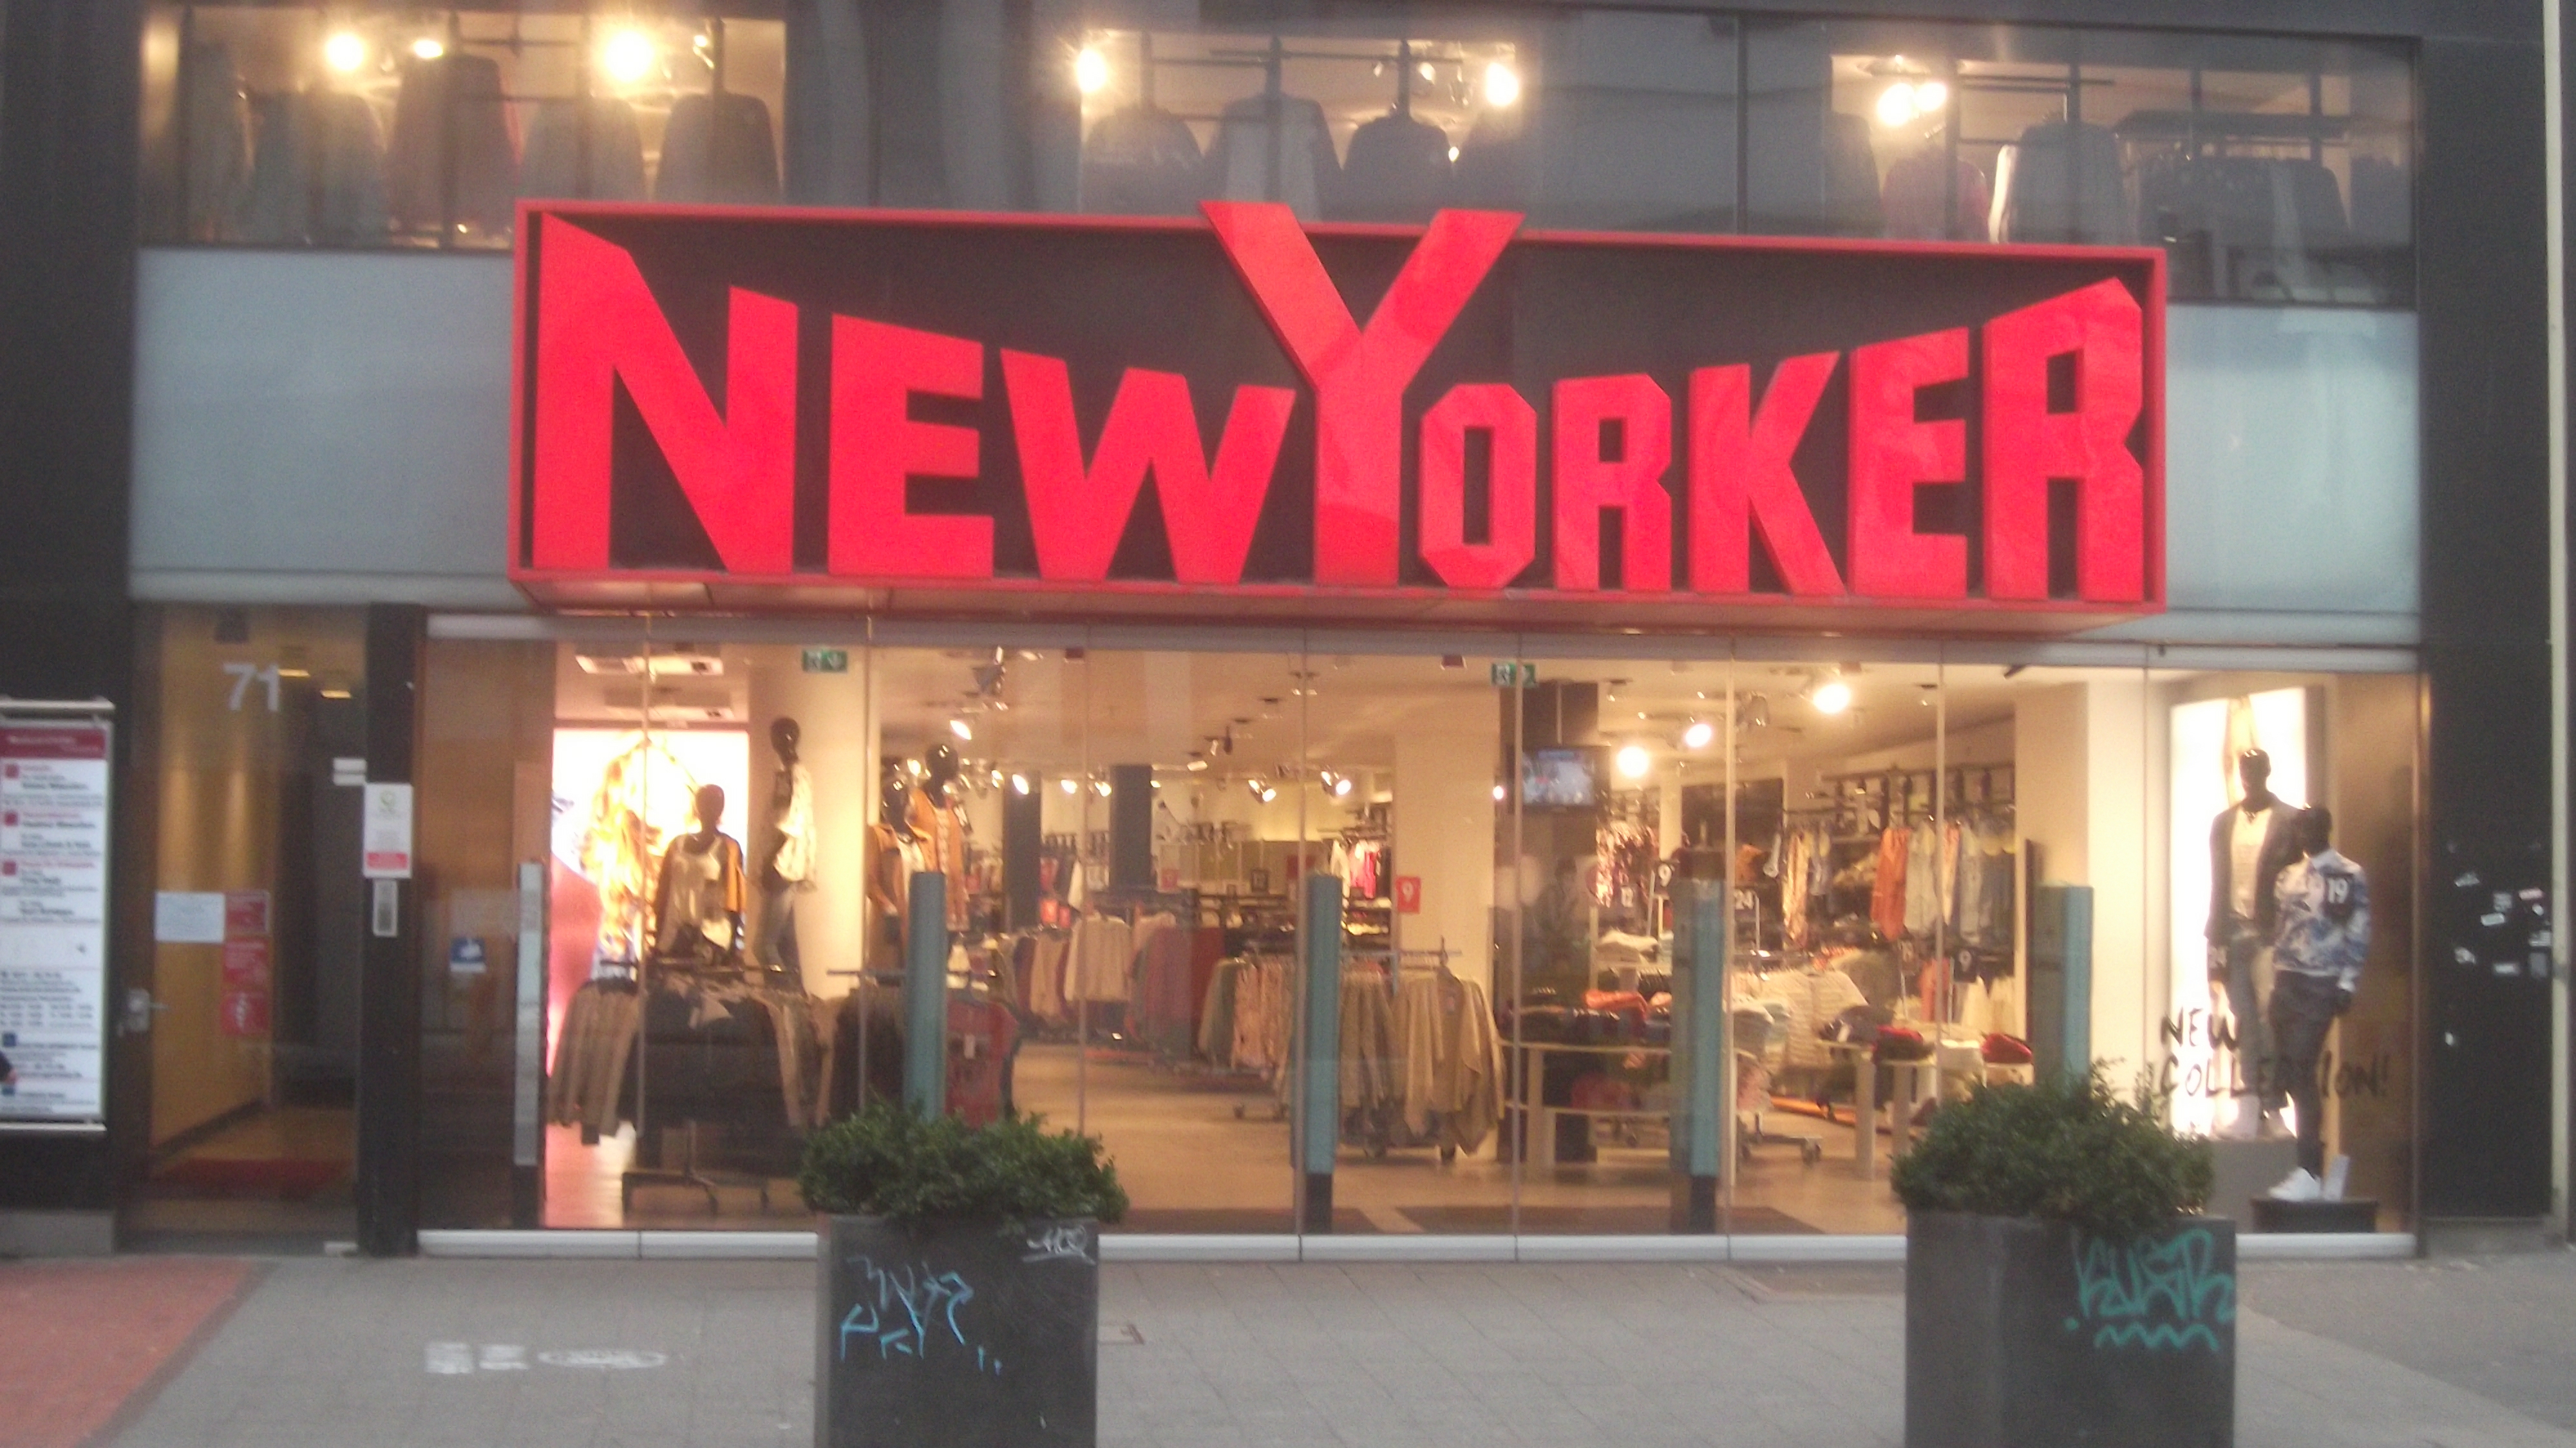 New Yorker SHK Jeans GmbH & Co. KG in 40212 Düsseldorf-Stadtmitte